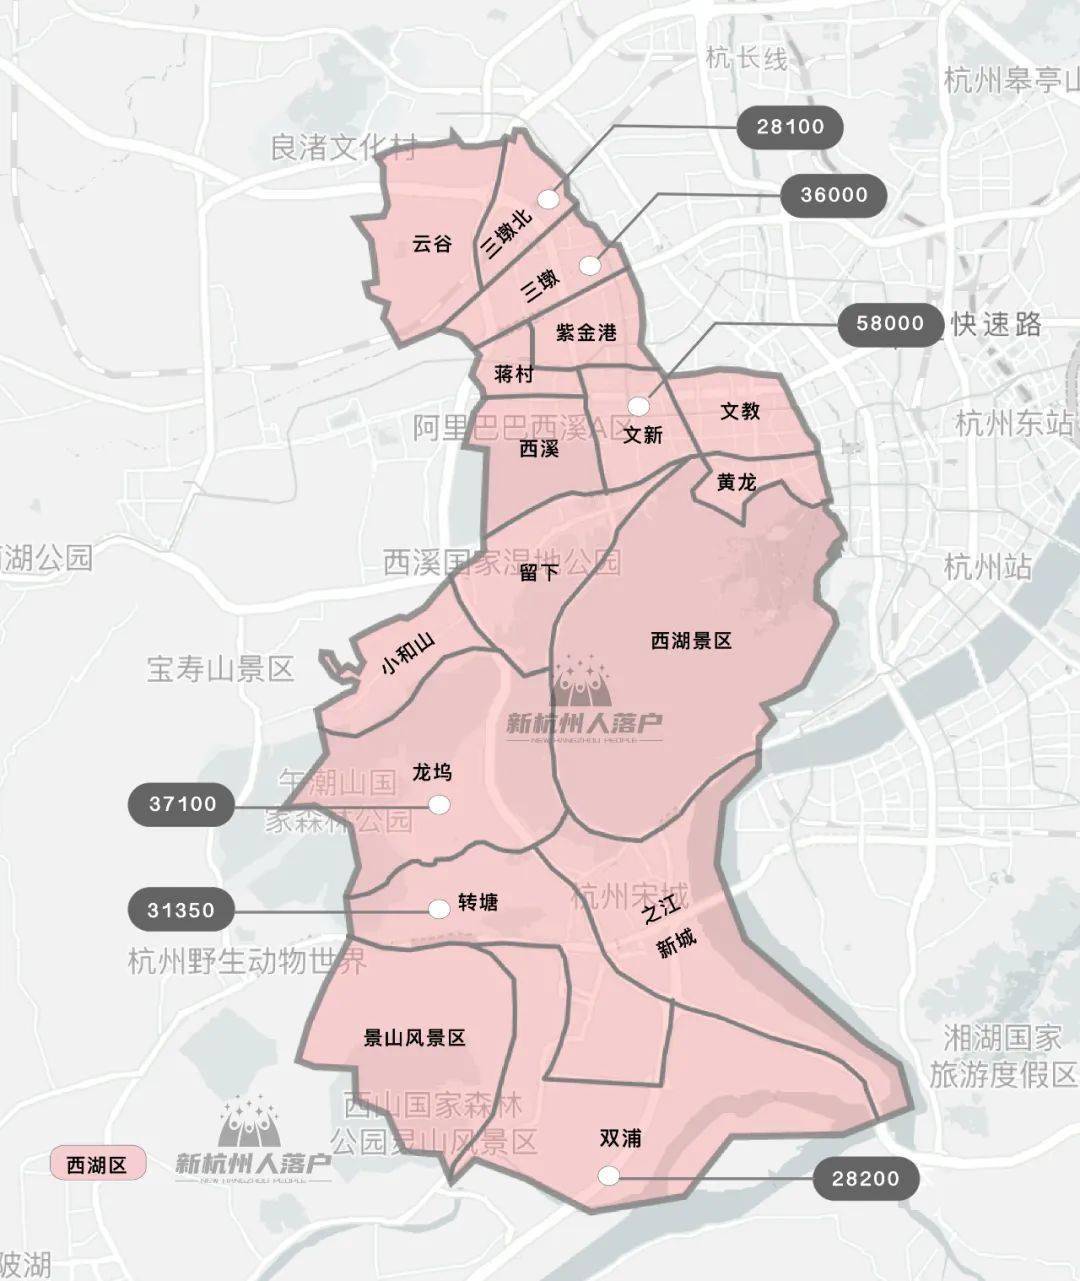 2021杭州各区新房限价地图出炉!临平区最高限价板块在哪?